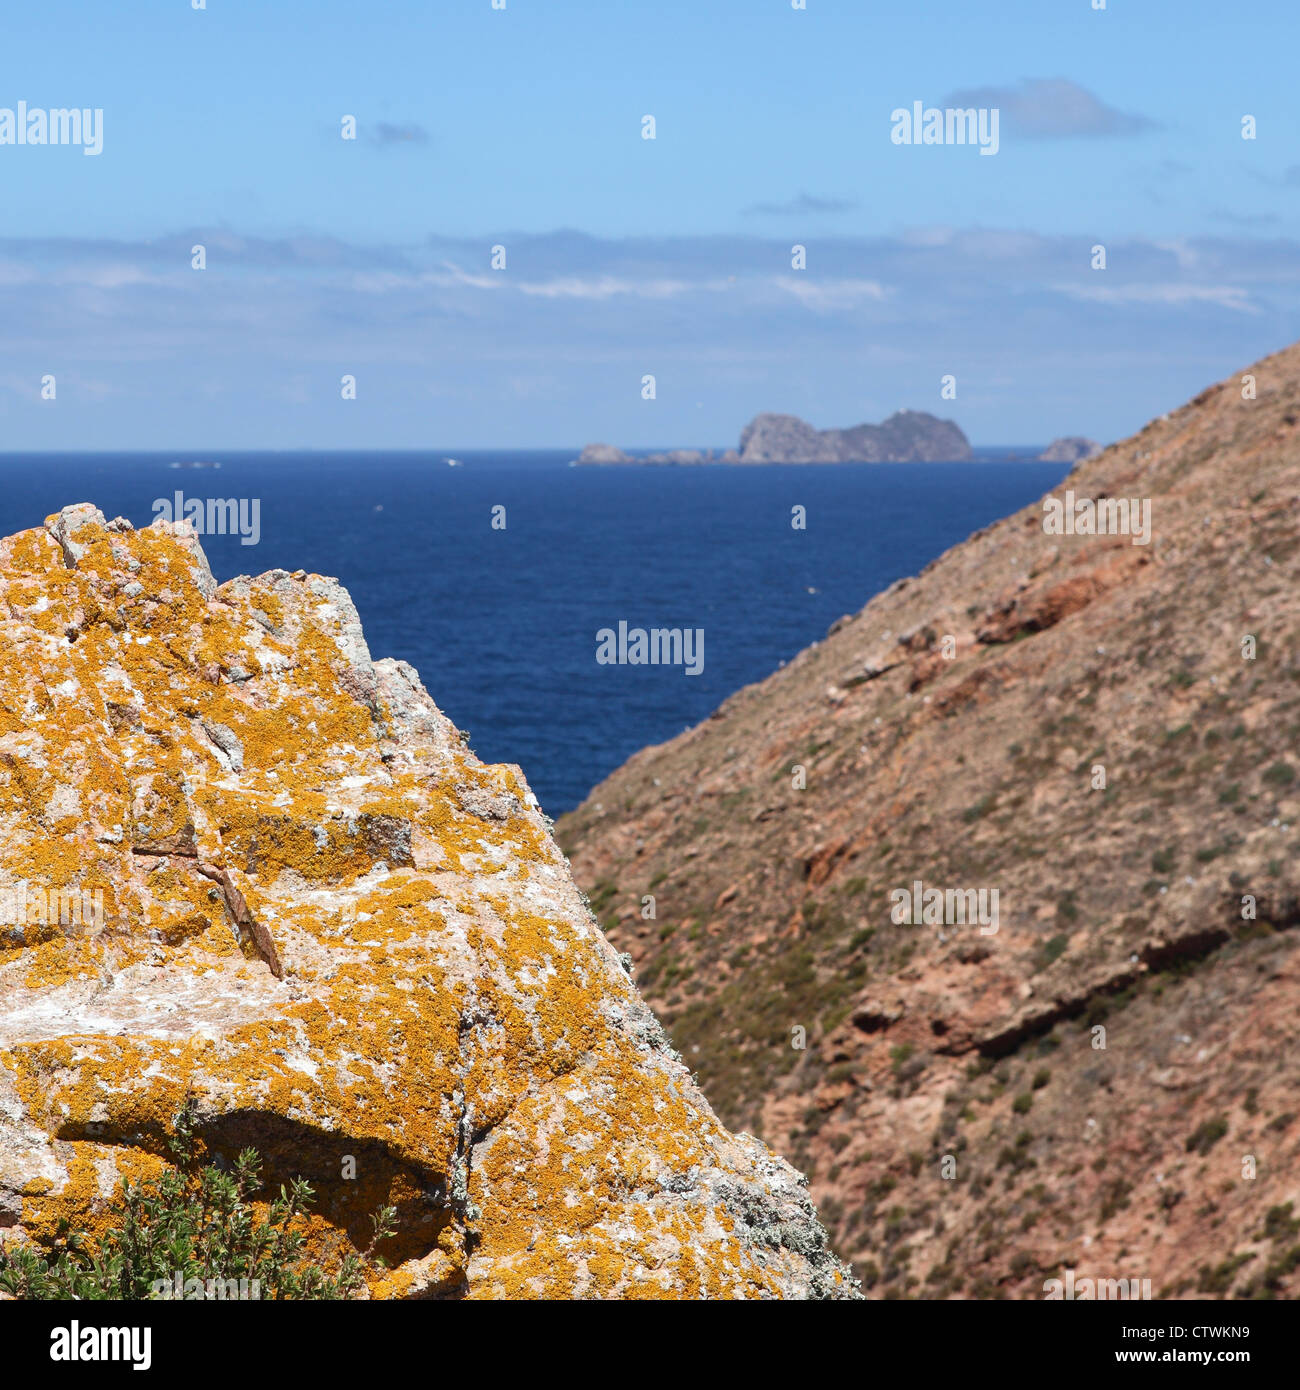 Des roches couvertes de lichen sur les îles Berlengas dans l'océan Atlantique, au large du Portugal. Banque D'Images